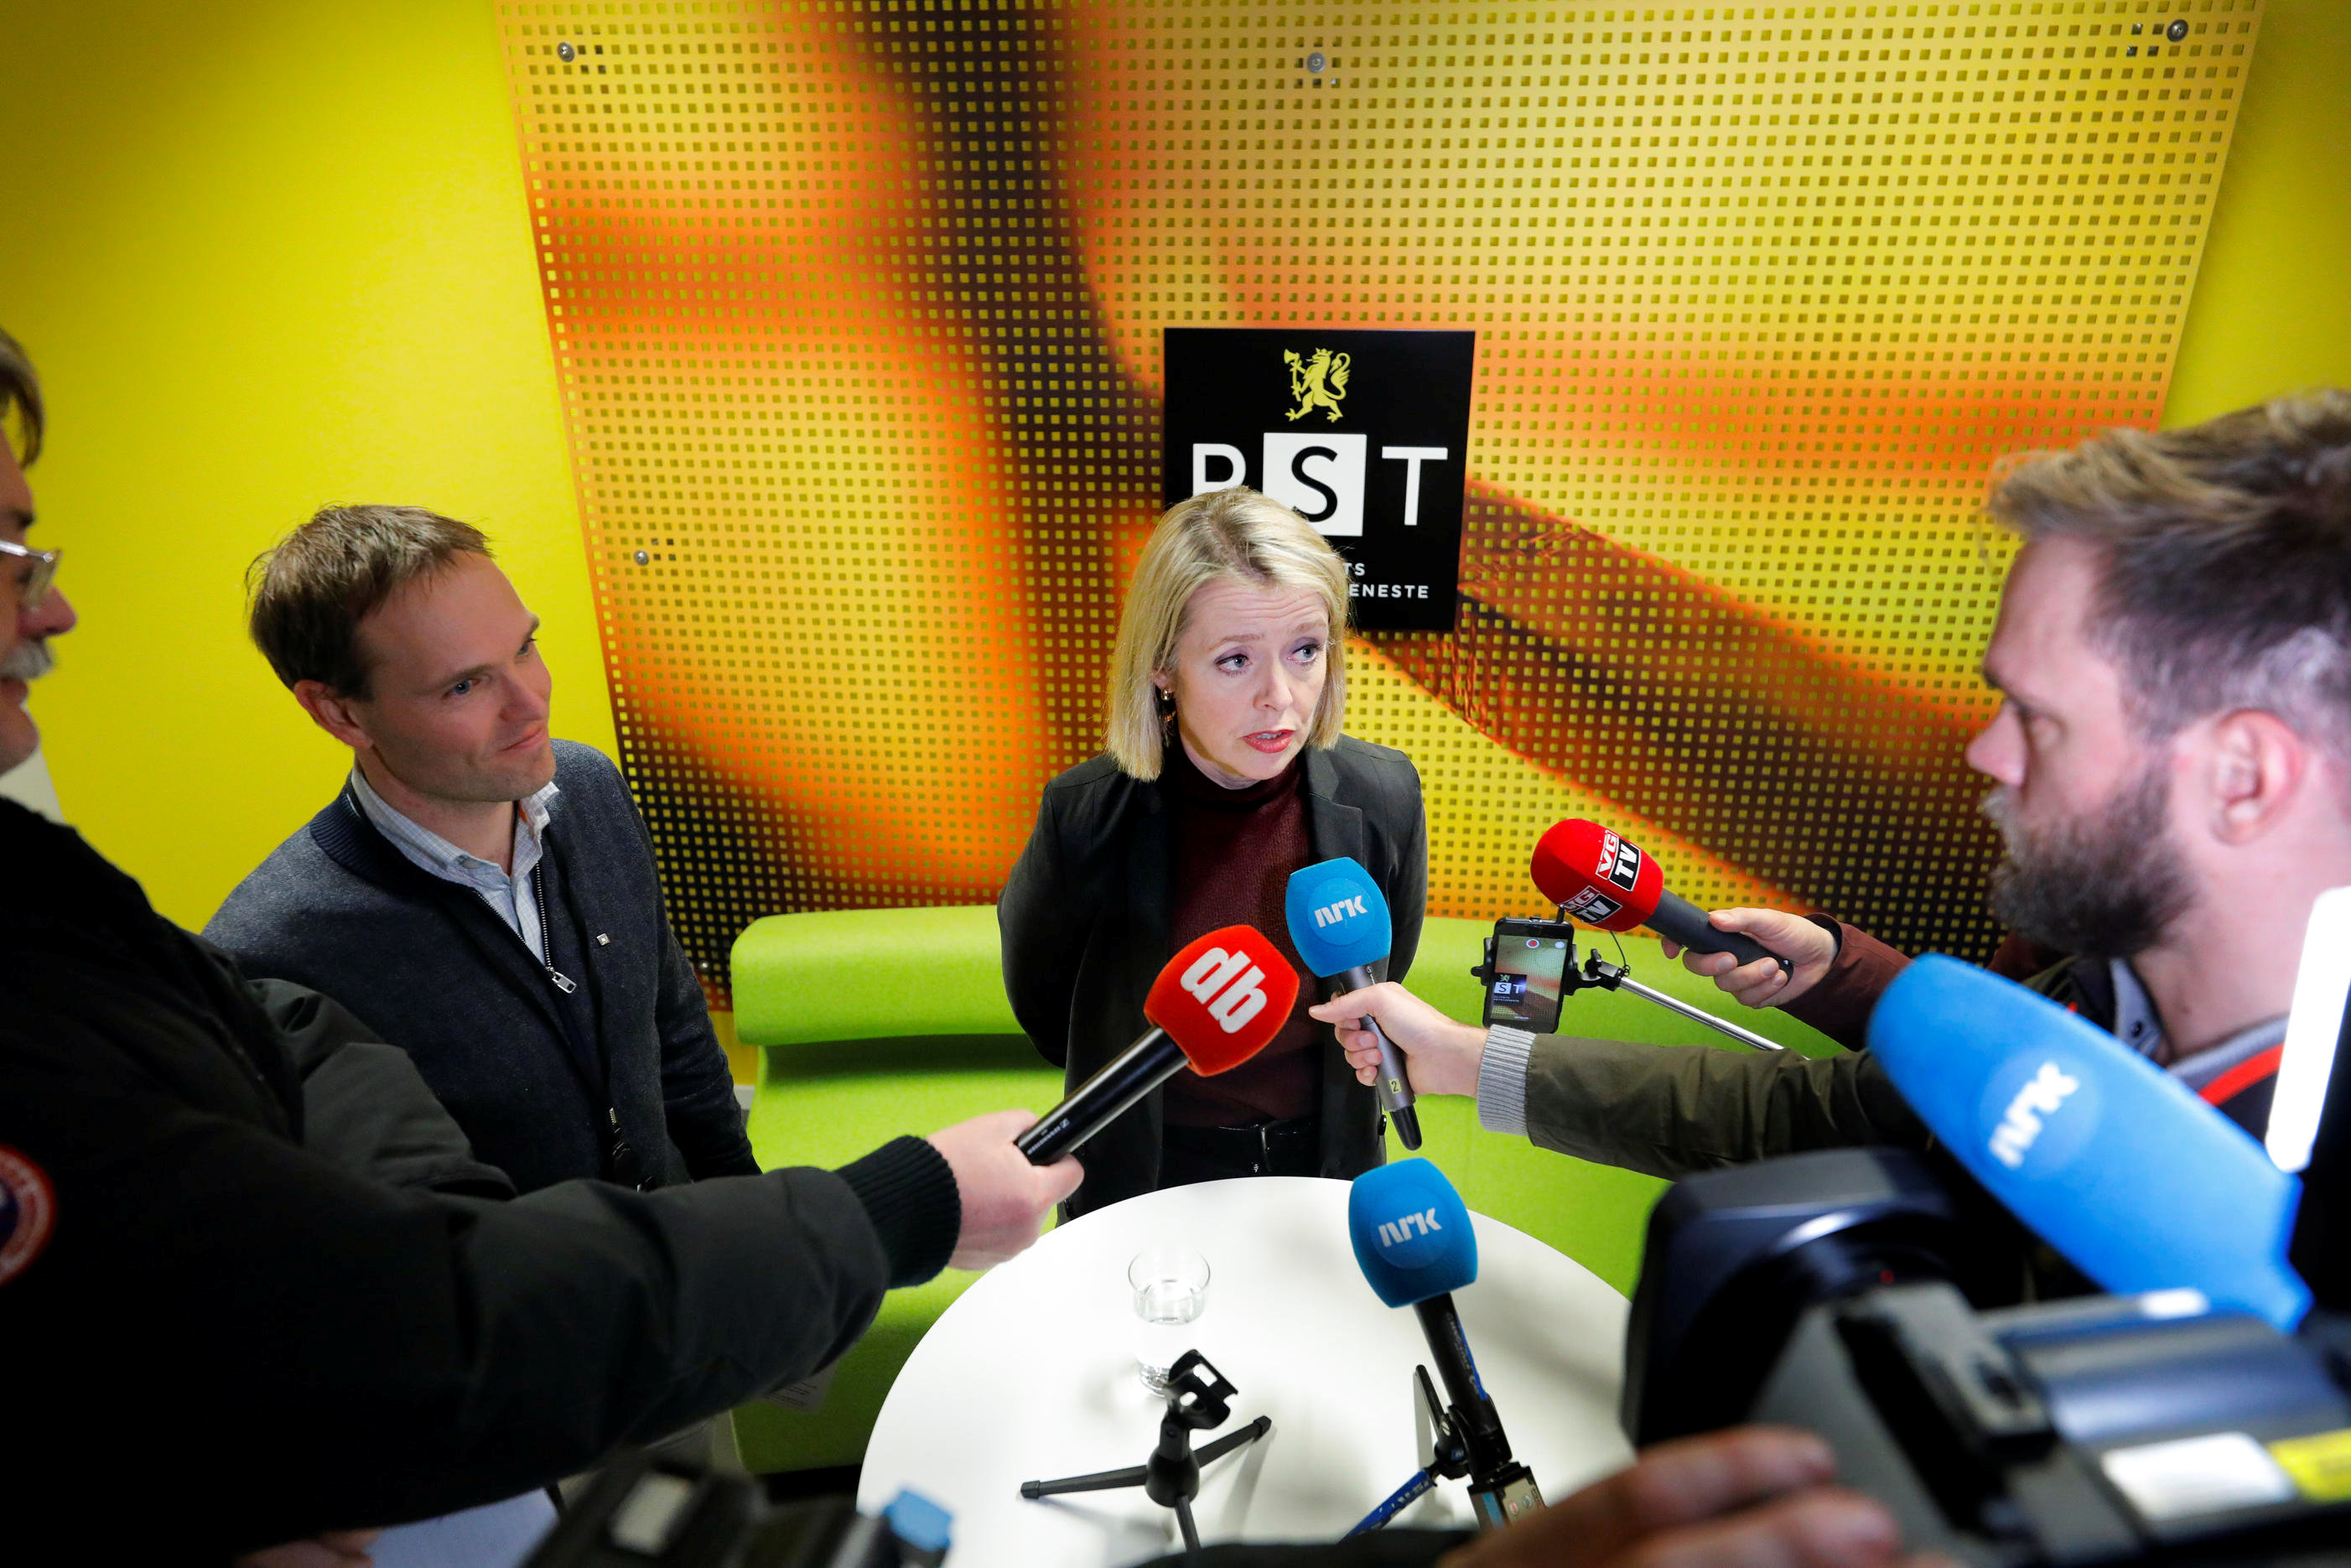 رئيسة جهاز الأمن الداخلي في النرويج بنديكت بورلاند خلال حديث صحافي حول عملية الطعن. رويترز